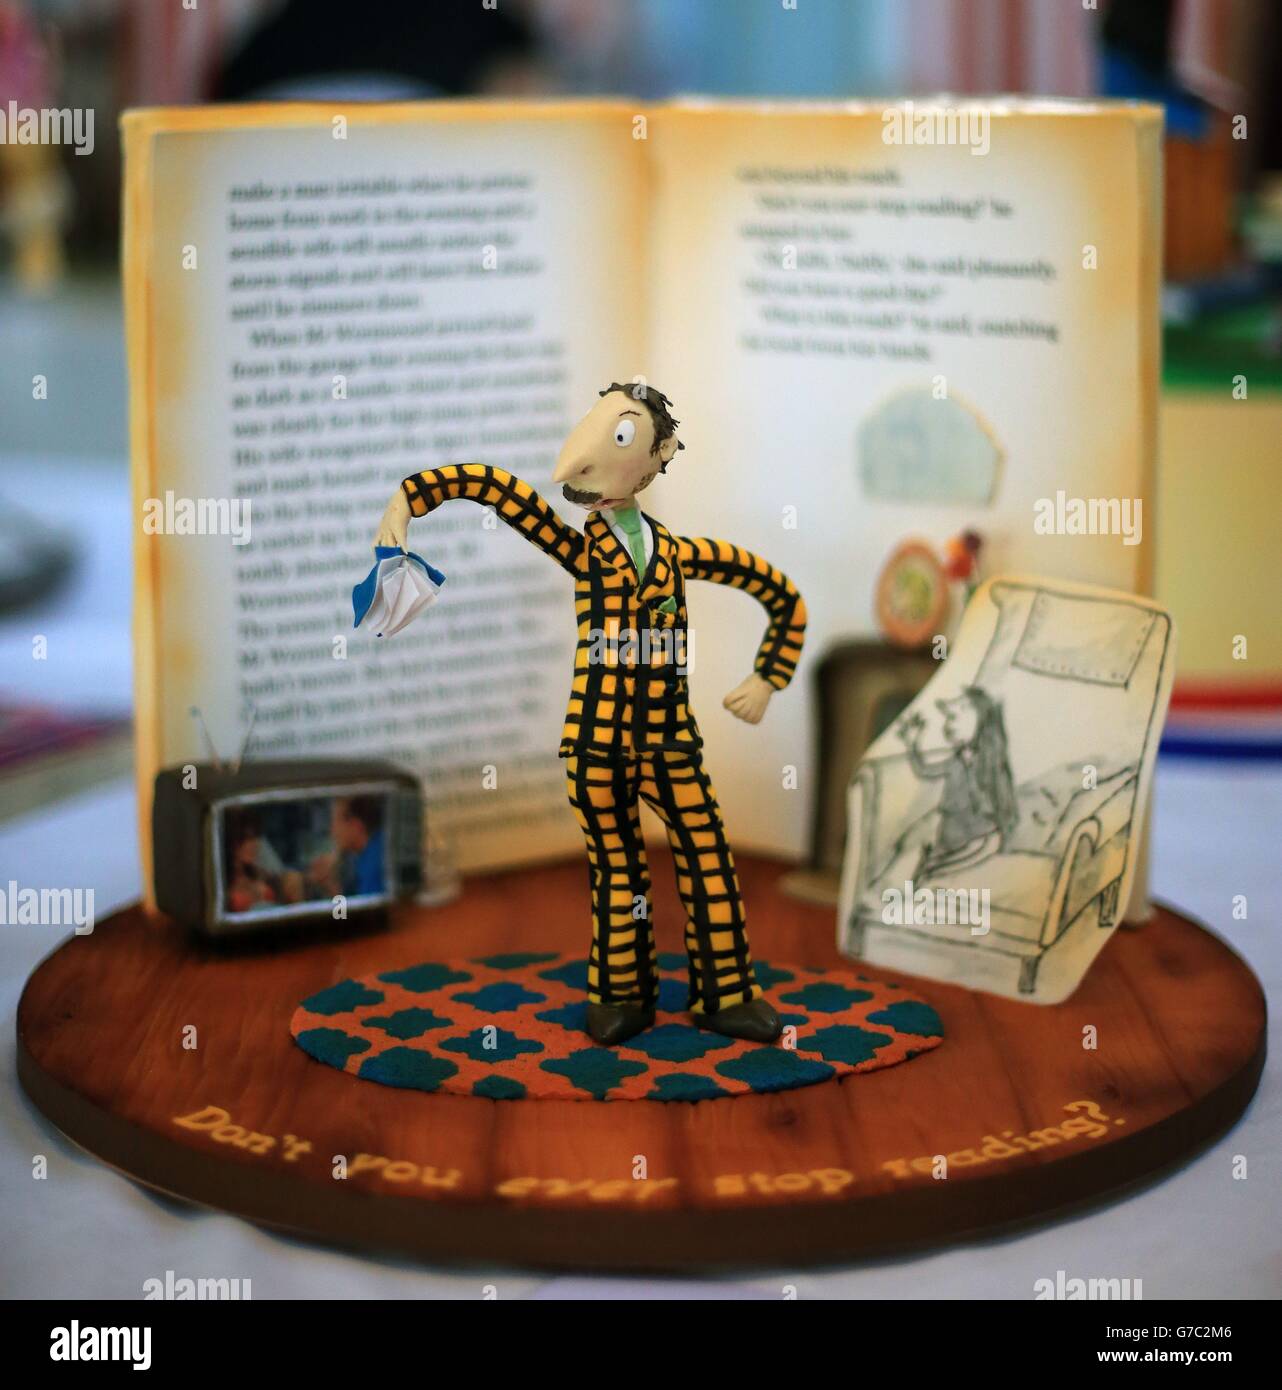 Eine Torte mit Mr. Wormwood aus Matilda von Susan Moore, Teil einer Ausstellung von Kuchen, die den Roald Dahl-Tag am 13. September und den 50. Jahrestag von Charlie und der Schokoladenfabrik feiern und in der Ark-Galerie in Temple Bar Dublin ausgestellt werden Stockfoto